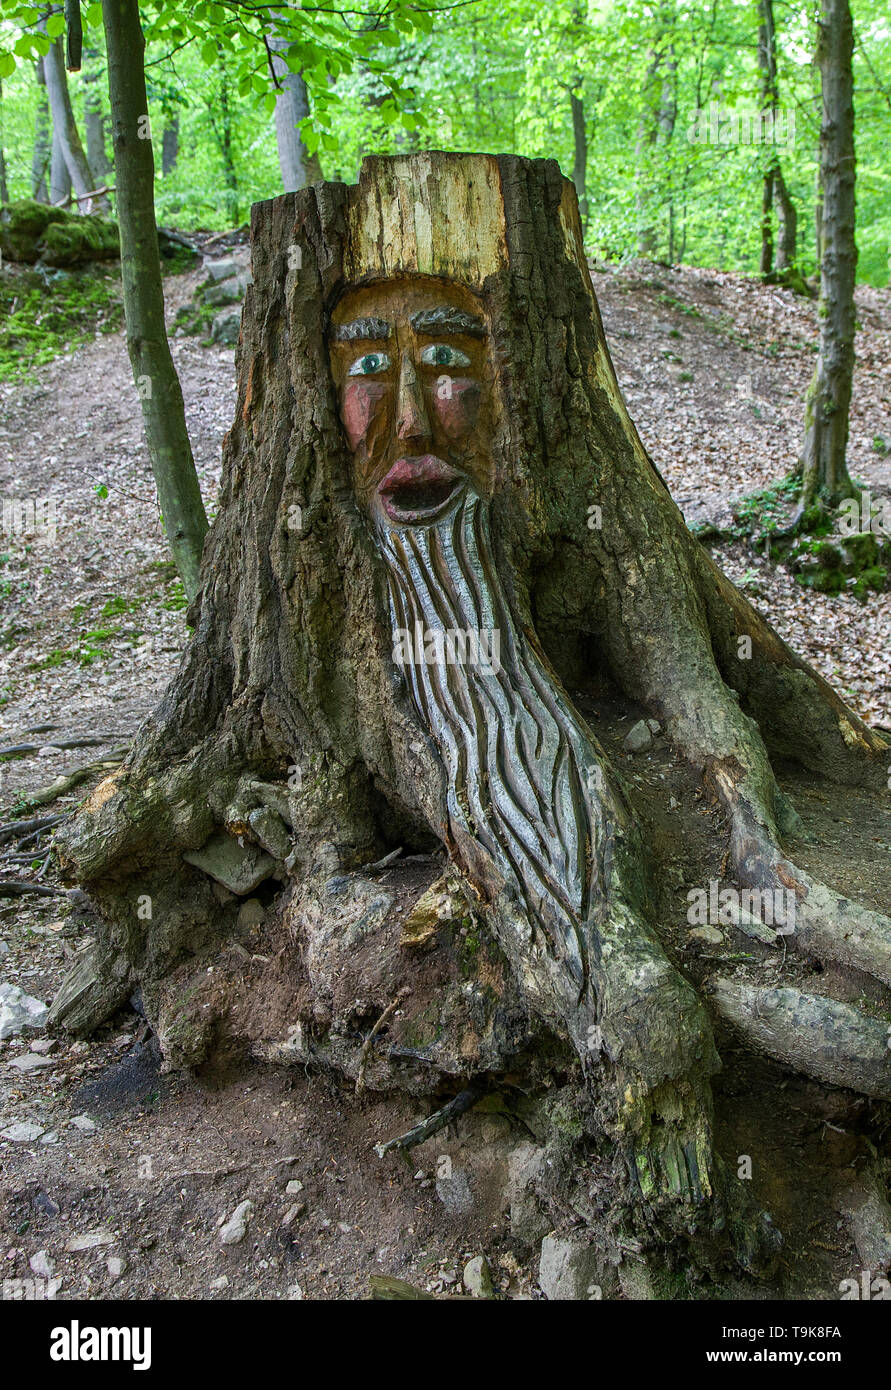 Carved face in a tree stump, Steckeschlääfer-Klamm, Binger forest, Bingen on the Rhine, Rhineland-Palatinate, Germany Stock Photo